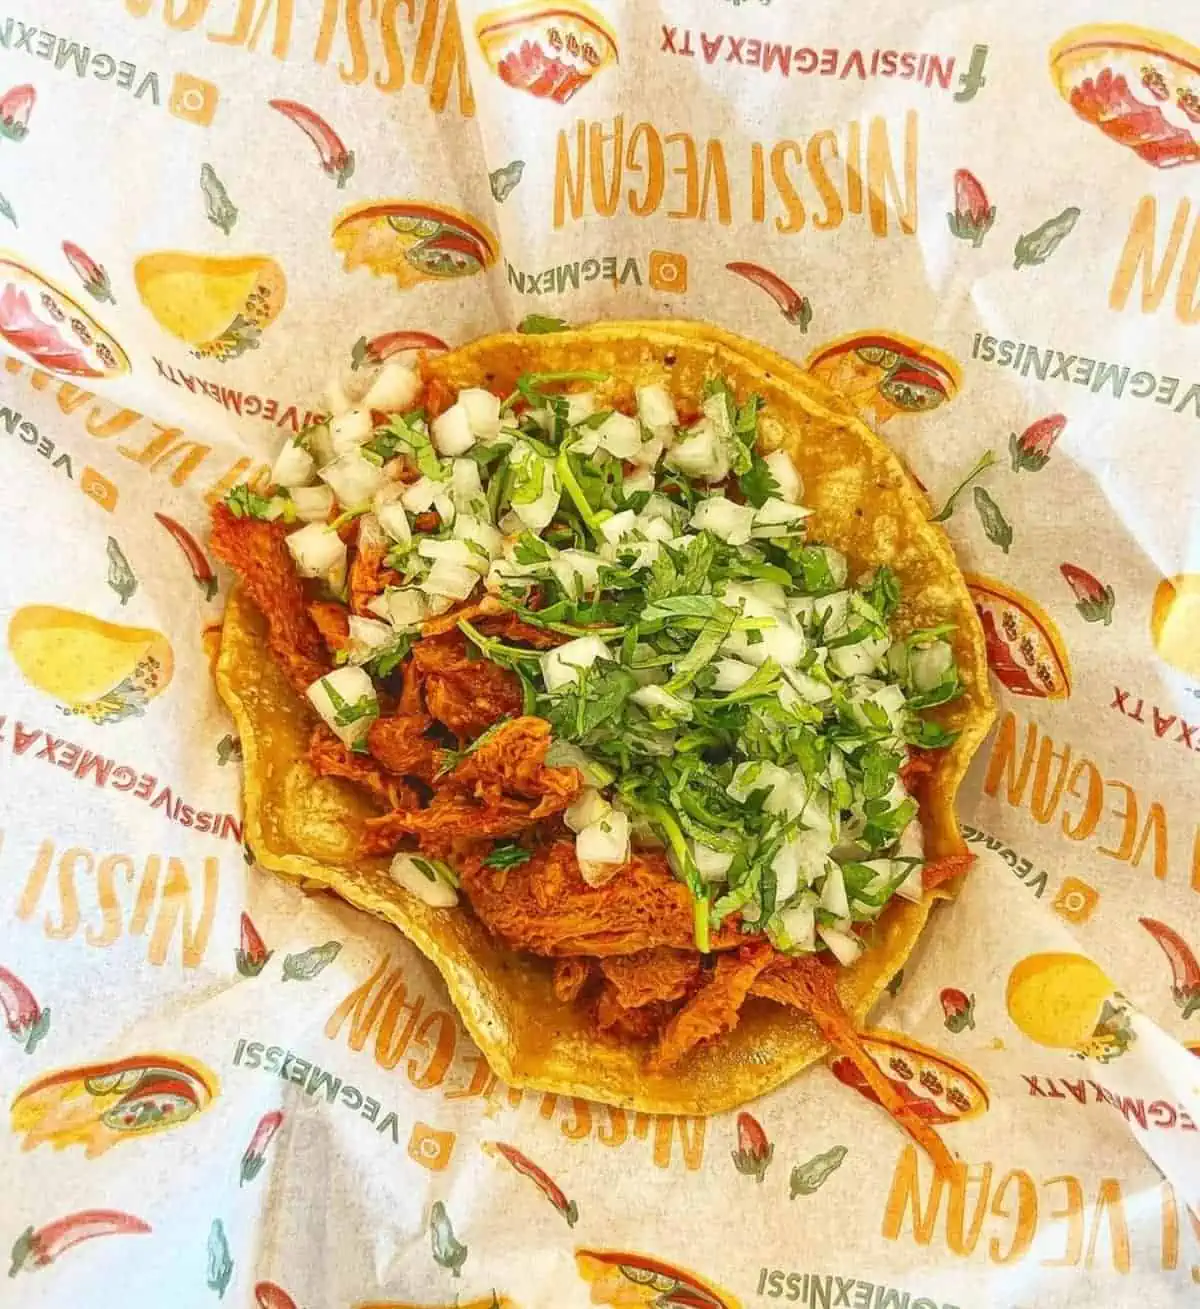 A vegan taco at Nissi Vegan Mexican Cuisine.